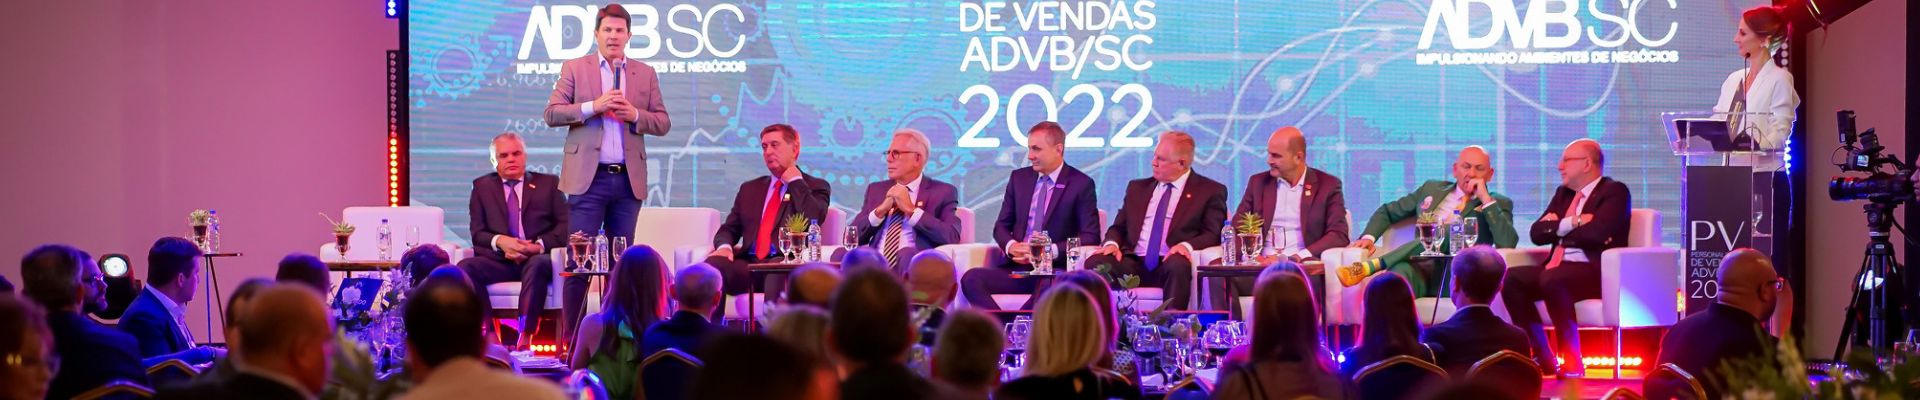 Personalidades de Venda ADVB/SC discutem economia e governo